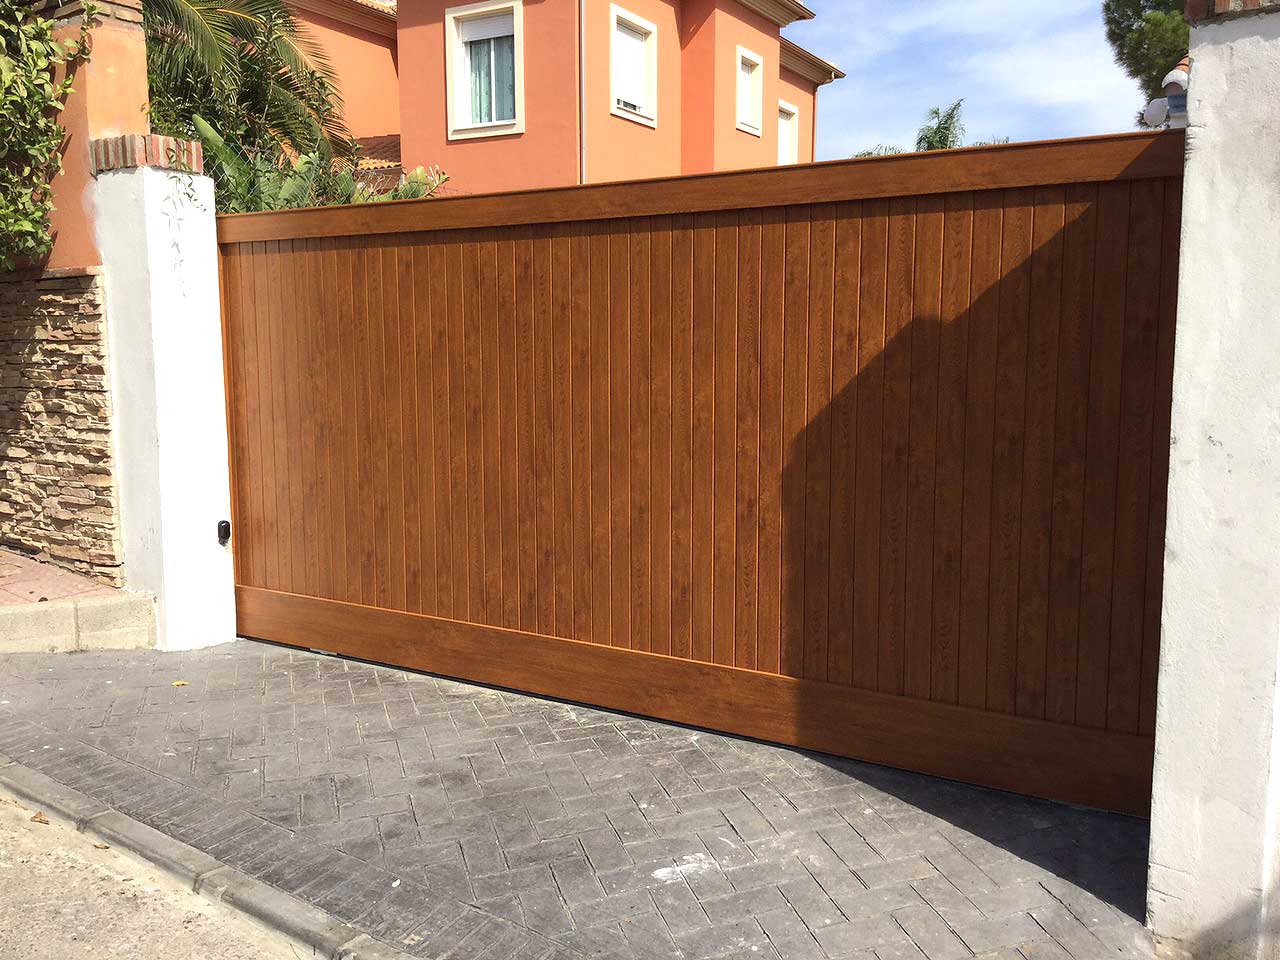 Puerta de Garaje Corredera fabricada e instalada por Gatech en Málaga. Fabricada en Aluminio con imitación a madera.